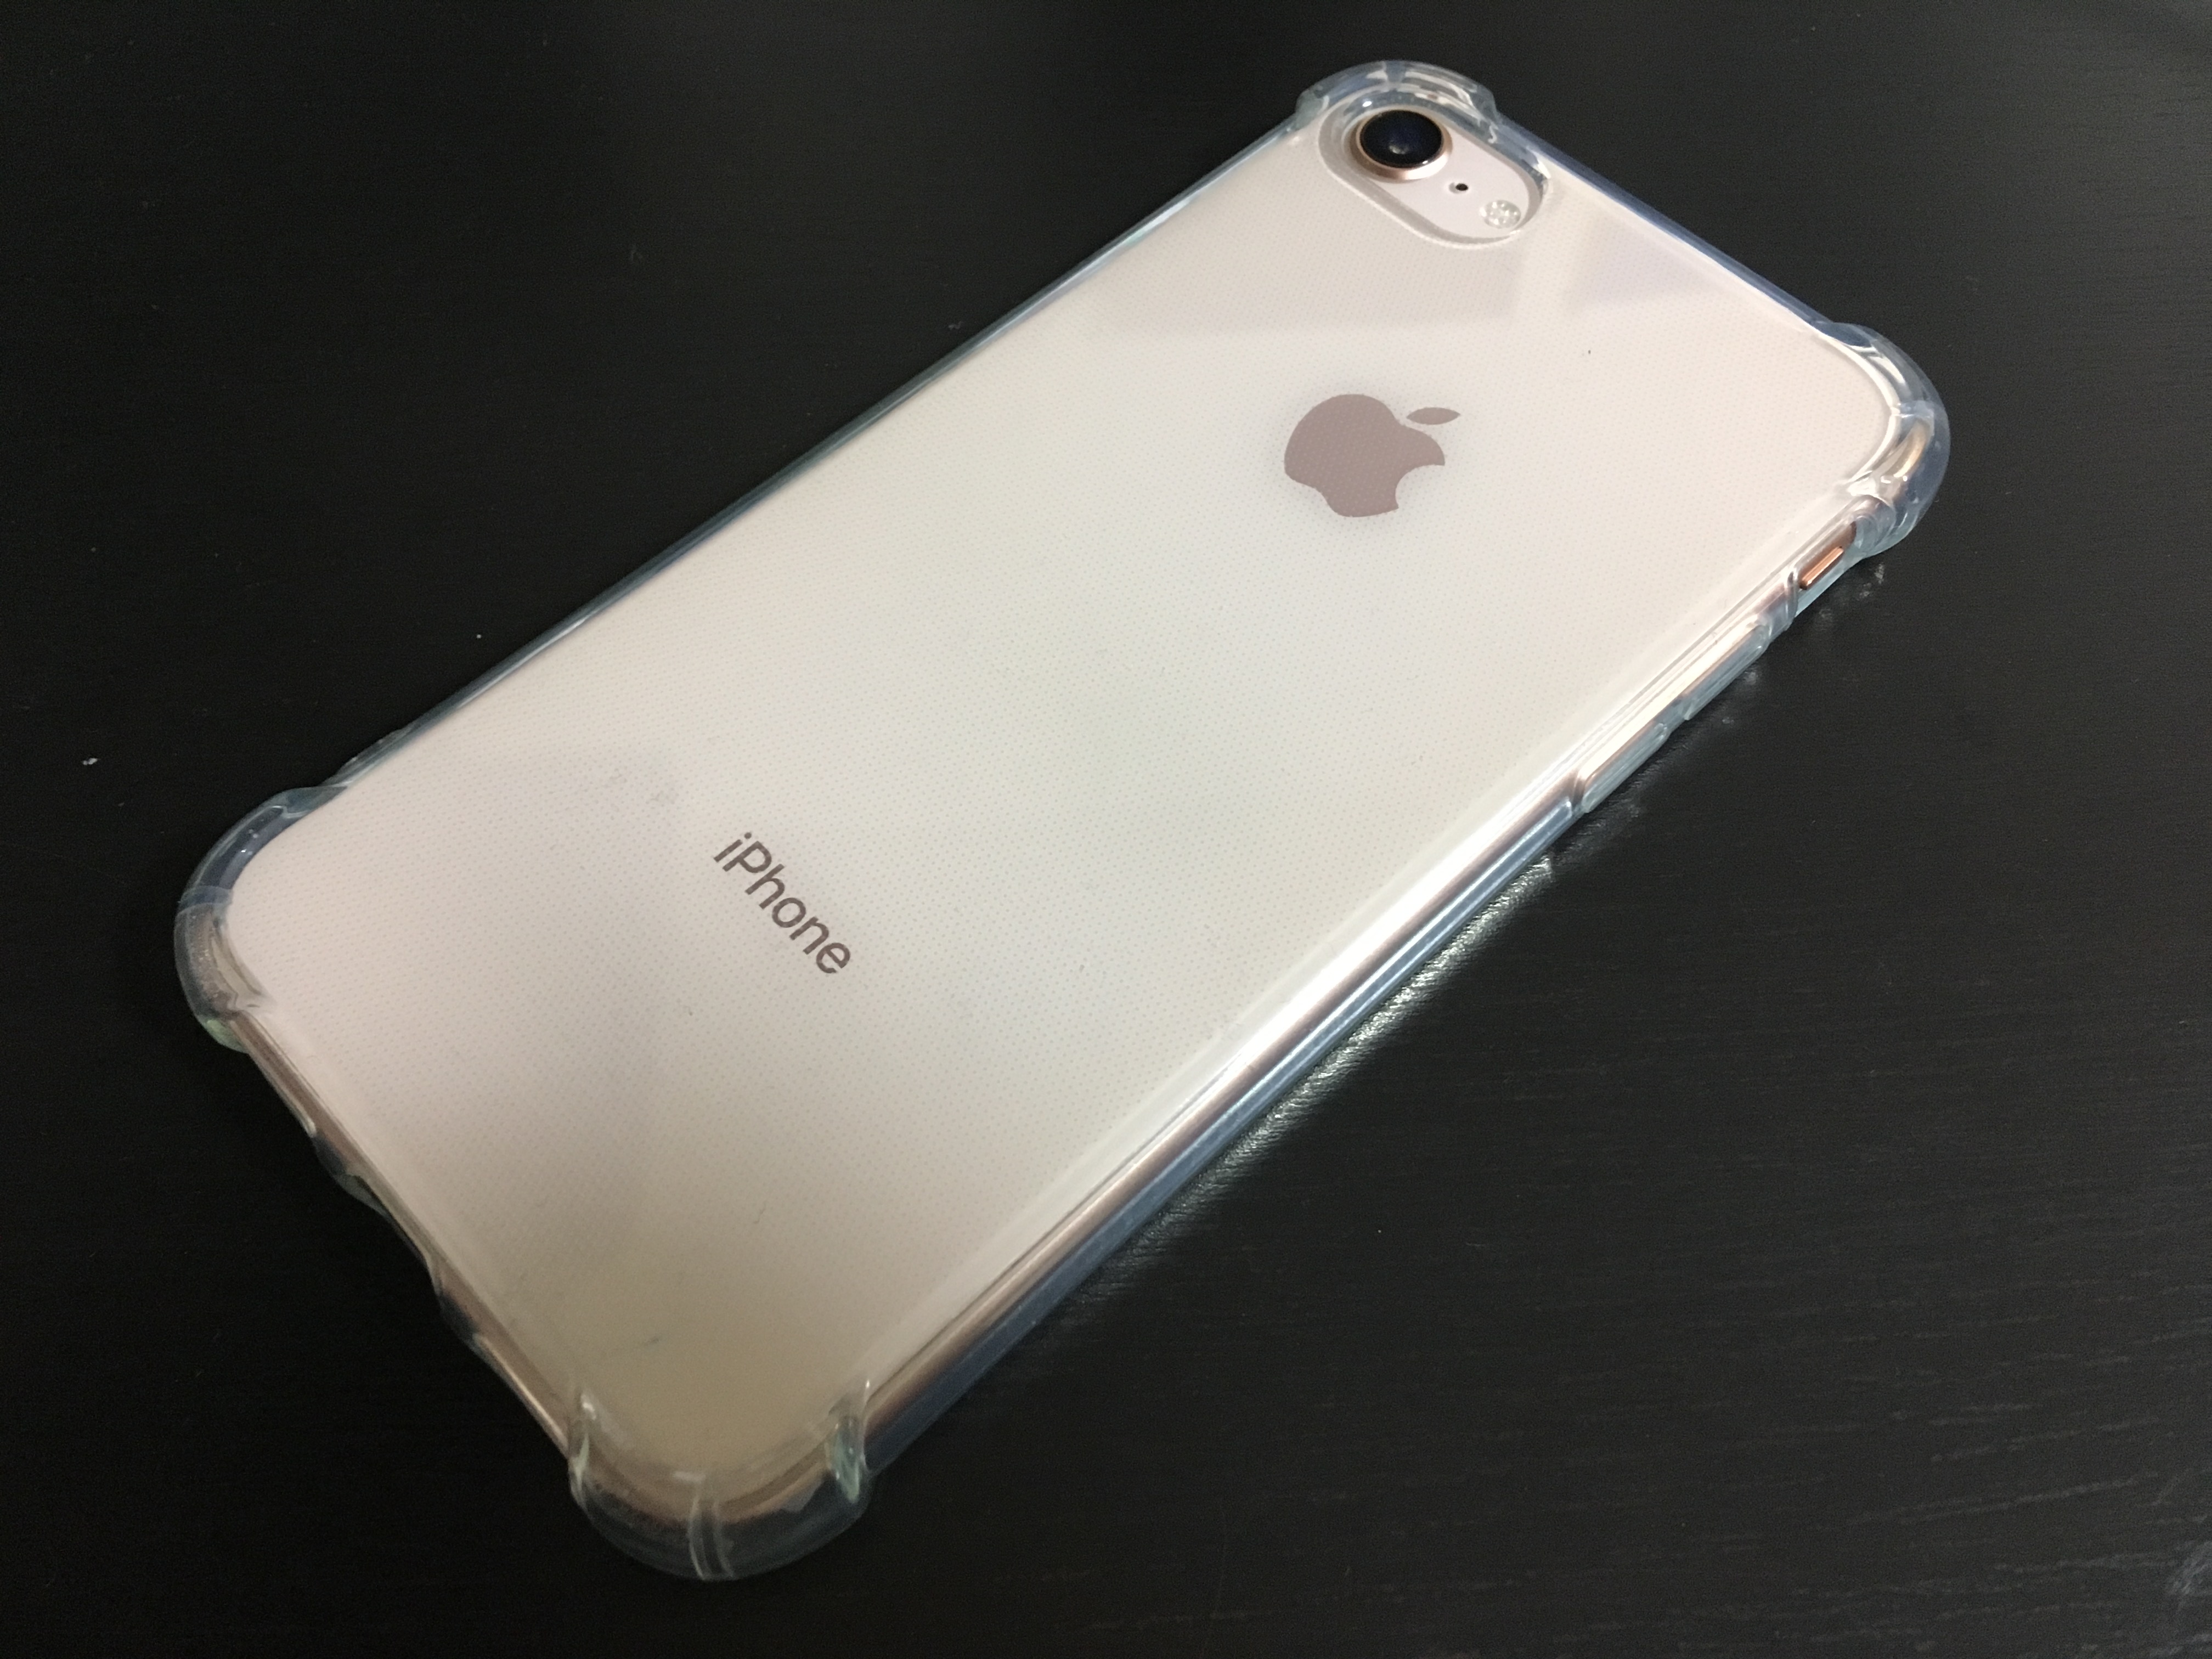 Iphone 8用のセリア100円ケースを買い替え しっかりしたケースでコスパ良くオススメです Gucchi23 Blog